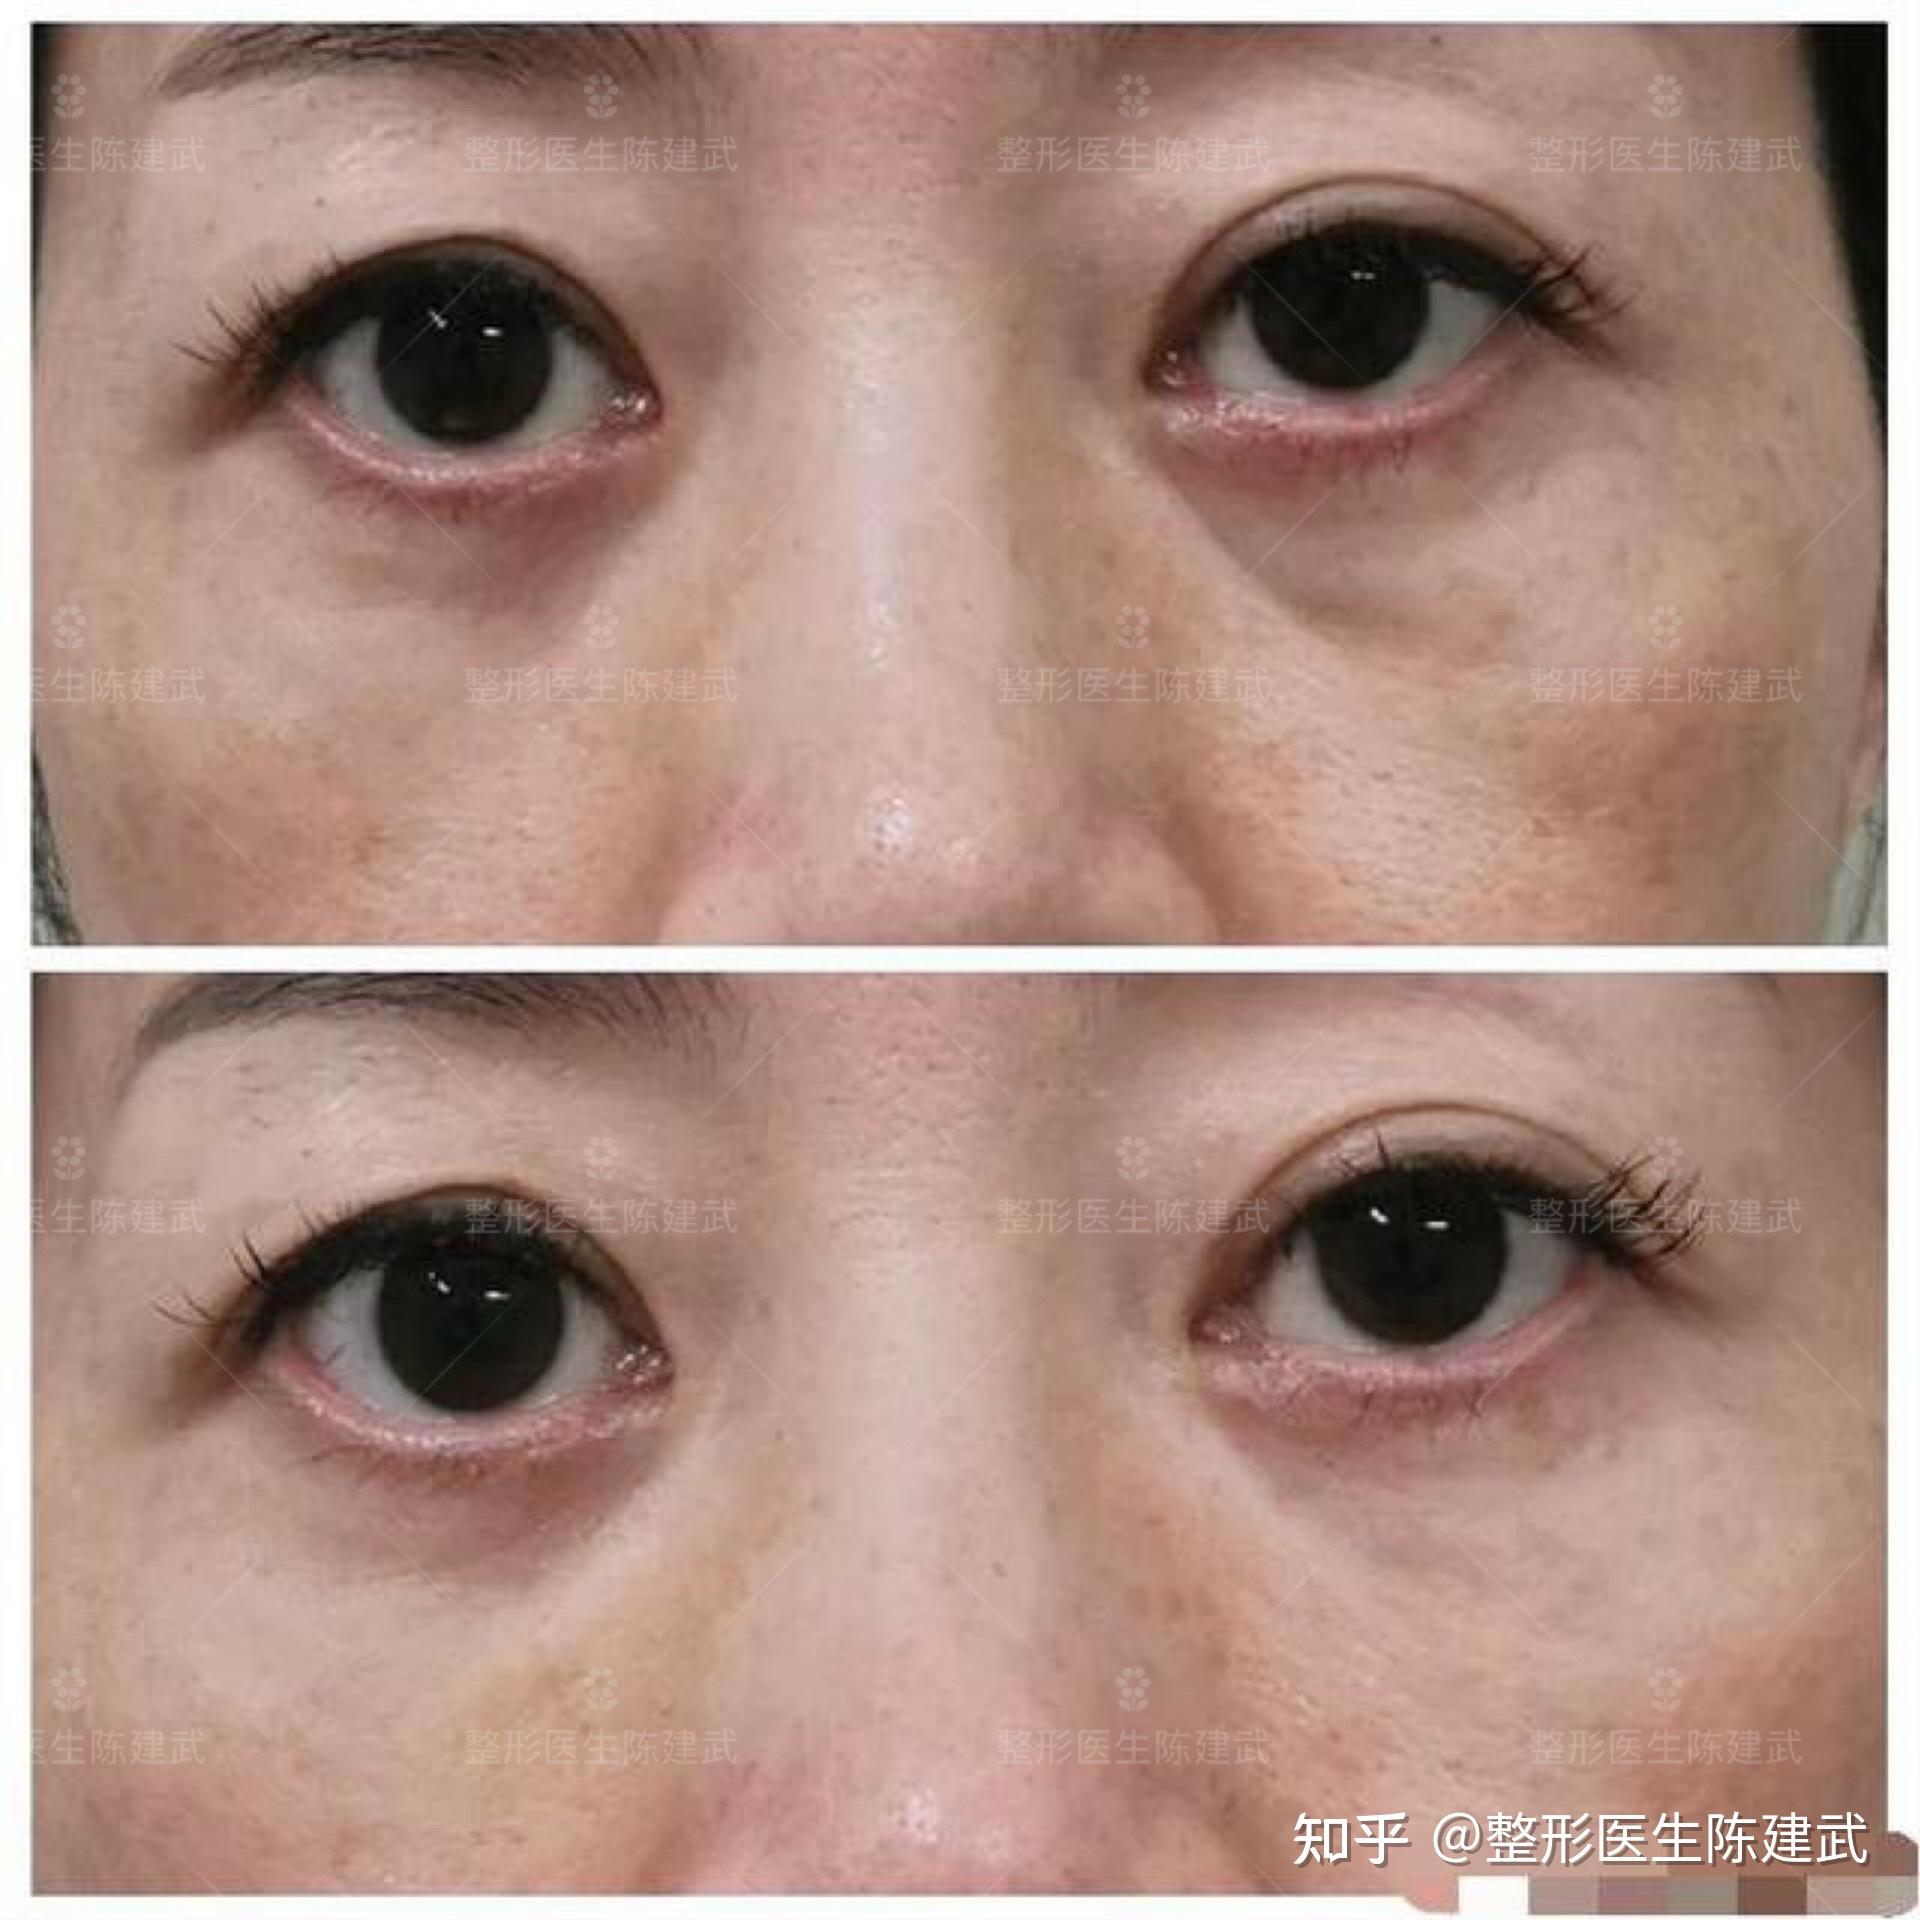 贵州贵阳双眼皮修复+内路眼袋手术后即刻对比照片 - 知乎